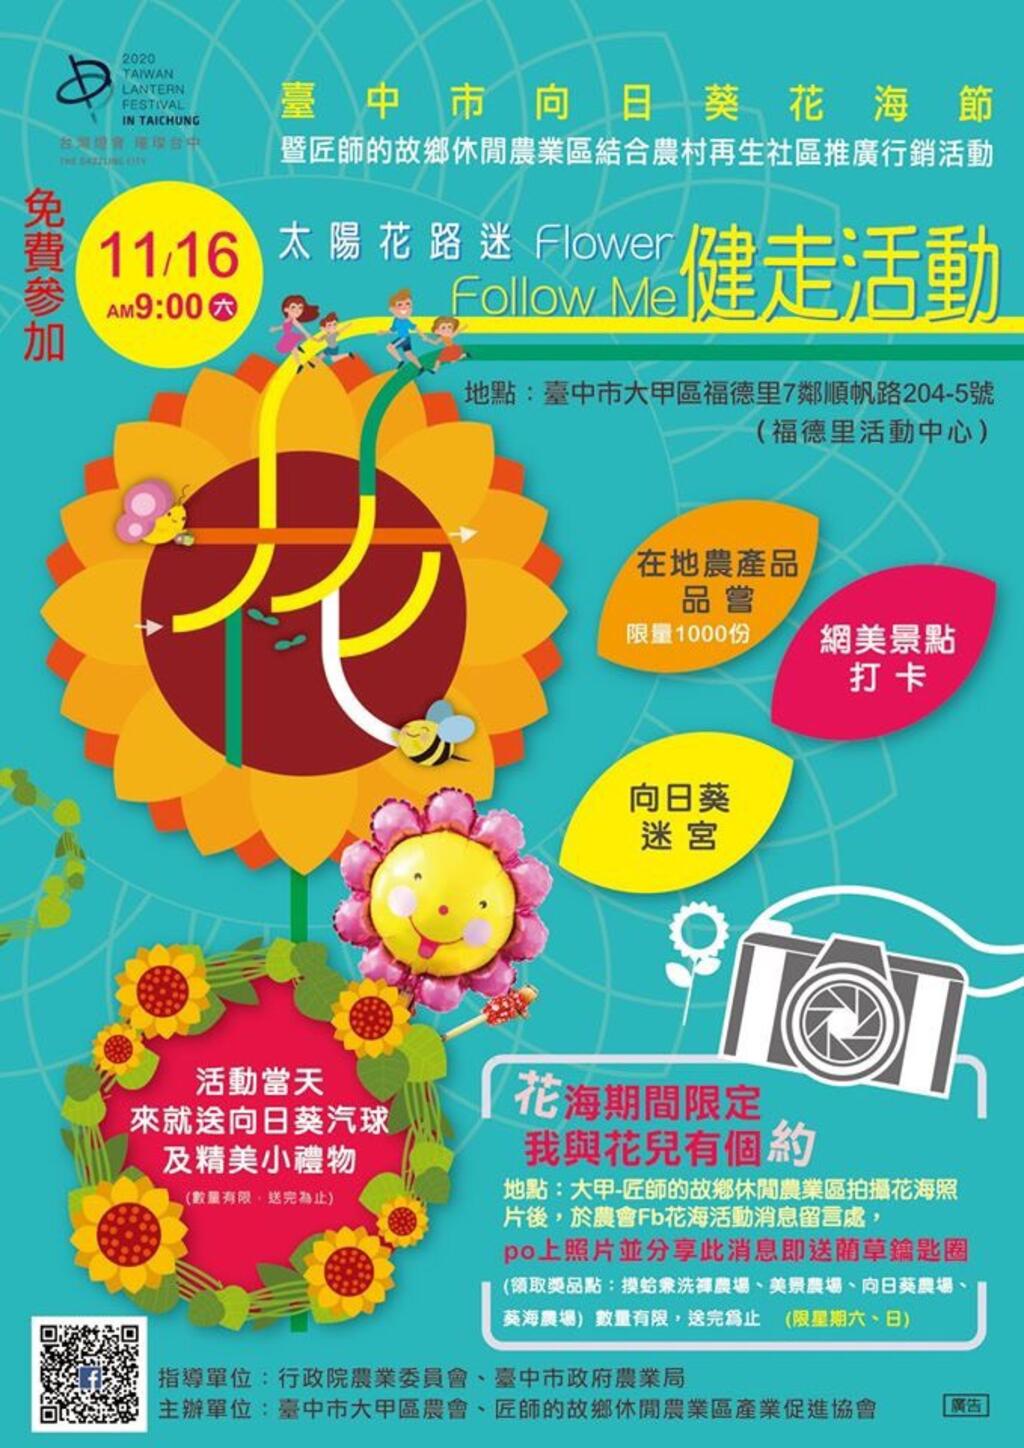 台中周末活动懒人包(11/15-17)